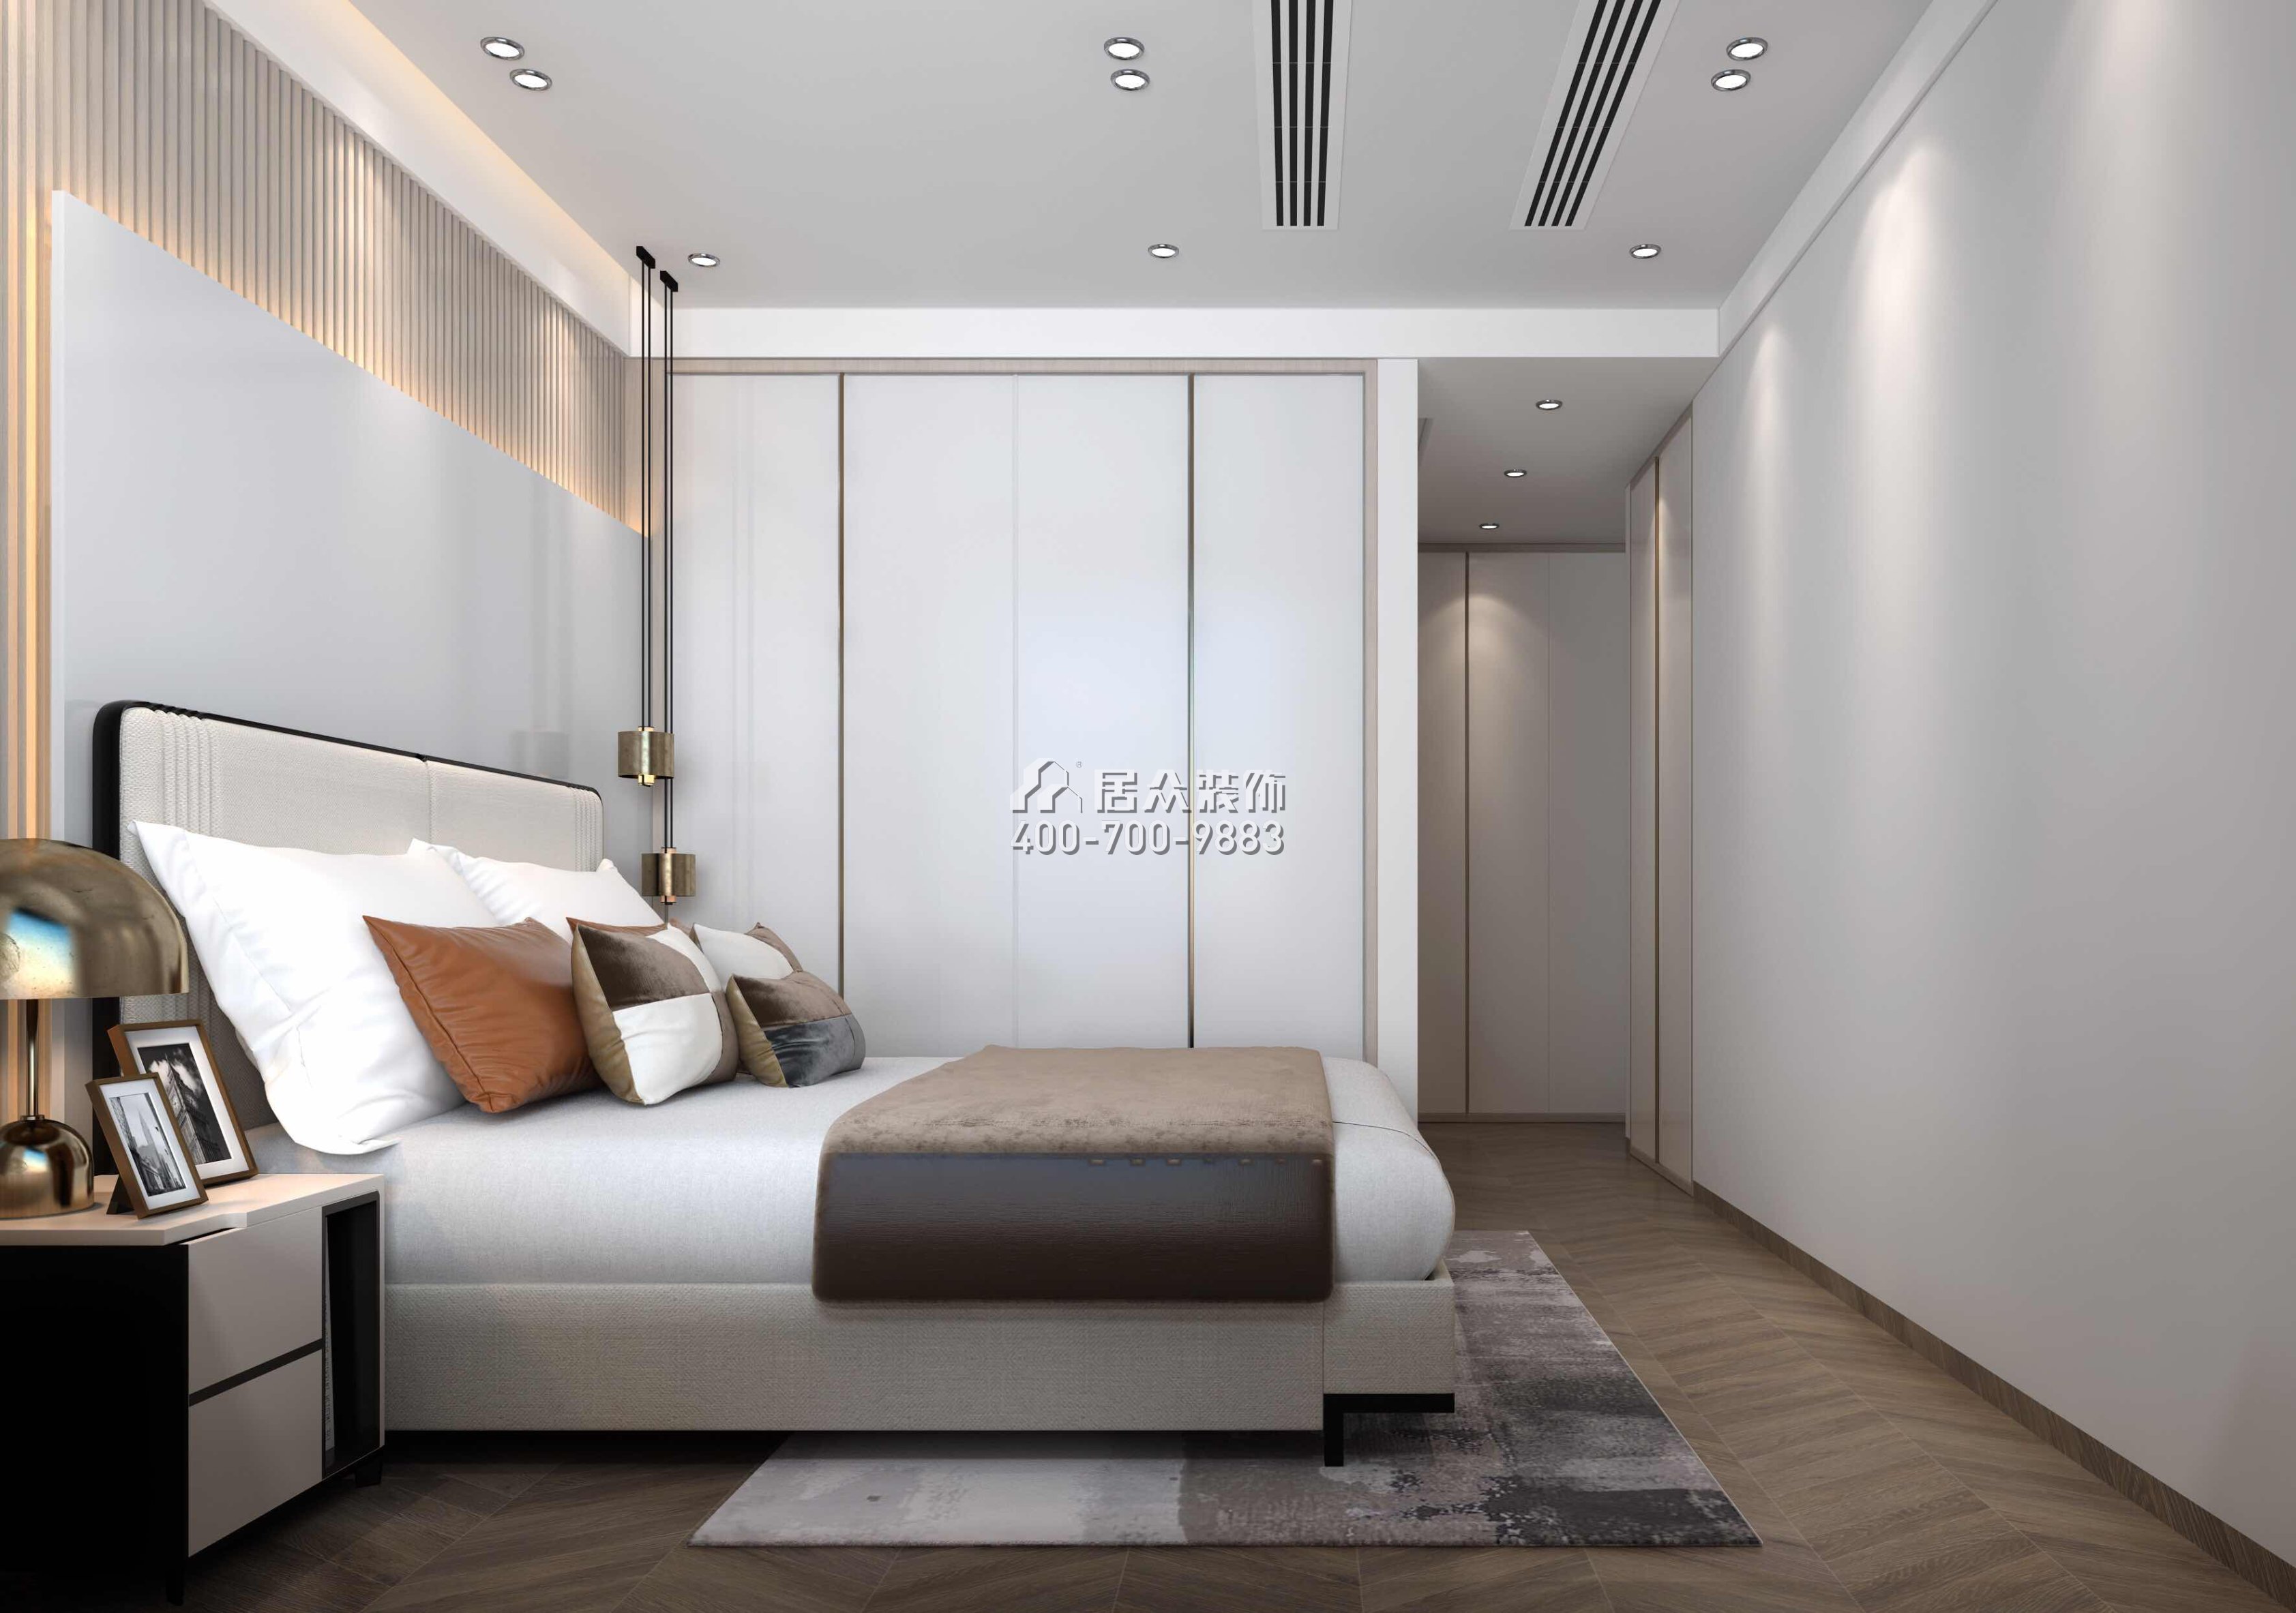 华发广场悦海湾114平方米现代简约风格平层户型卧室装修效果图